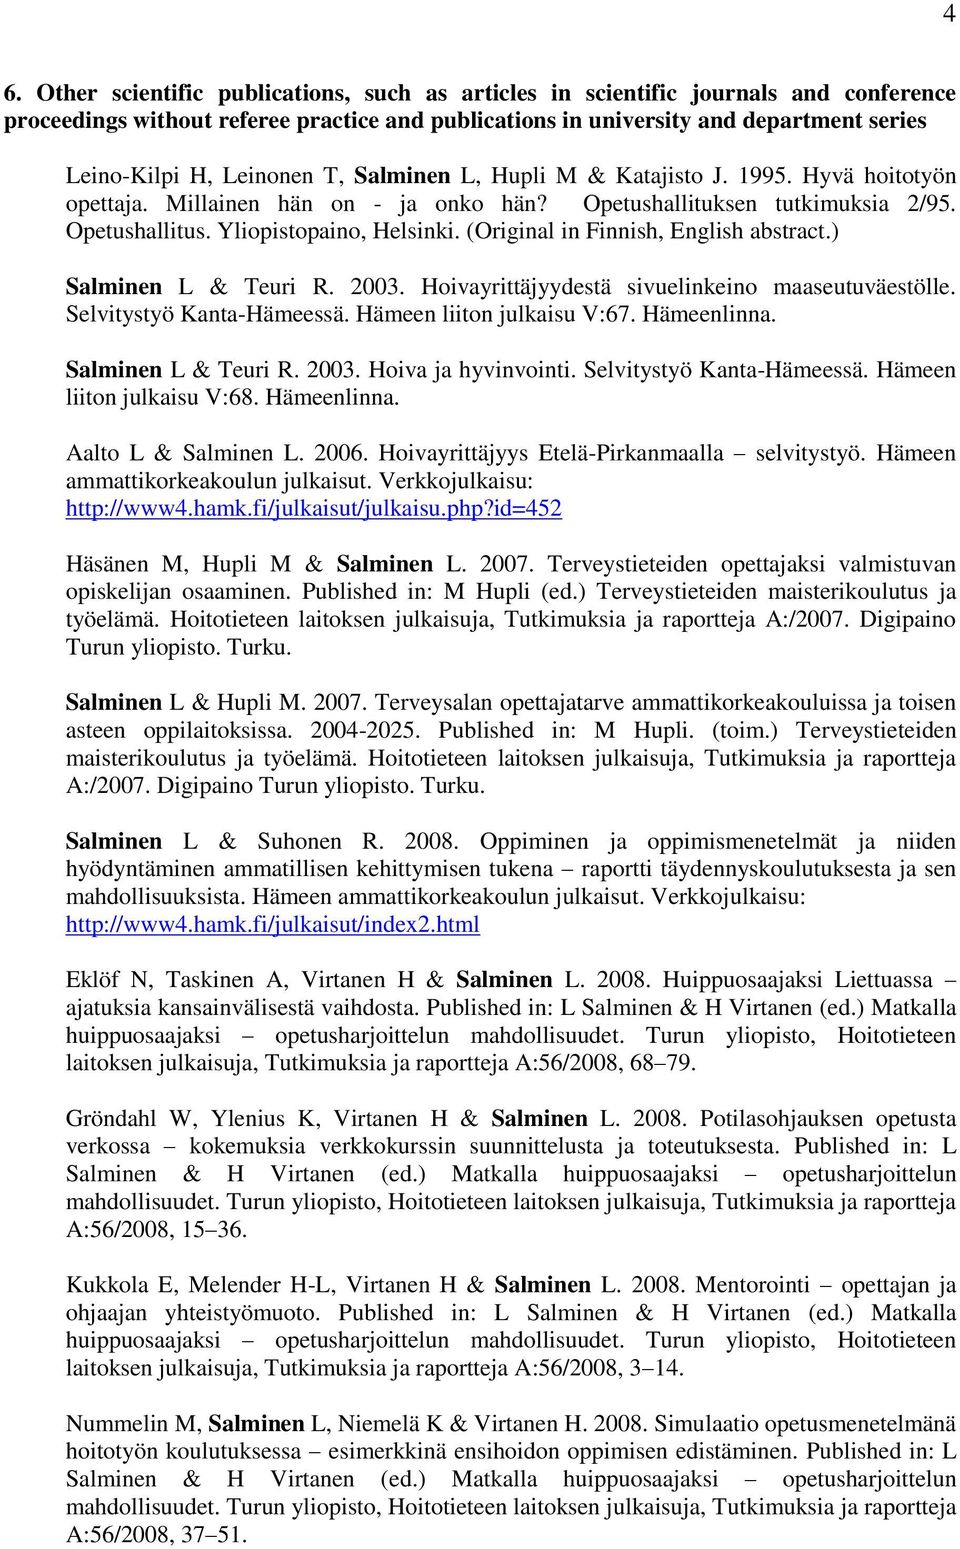 (Original in Finnish, English abstract.) Salminen L & Teuri R. 2003. Hoivayrittäjyydestä sivuelinkeino maaseutuväestölle. Selvitystyö Kanta-Hämeessä. Hämeen liiton julkaisu V:67. Hämeenlinna.